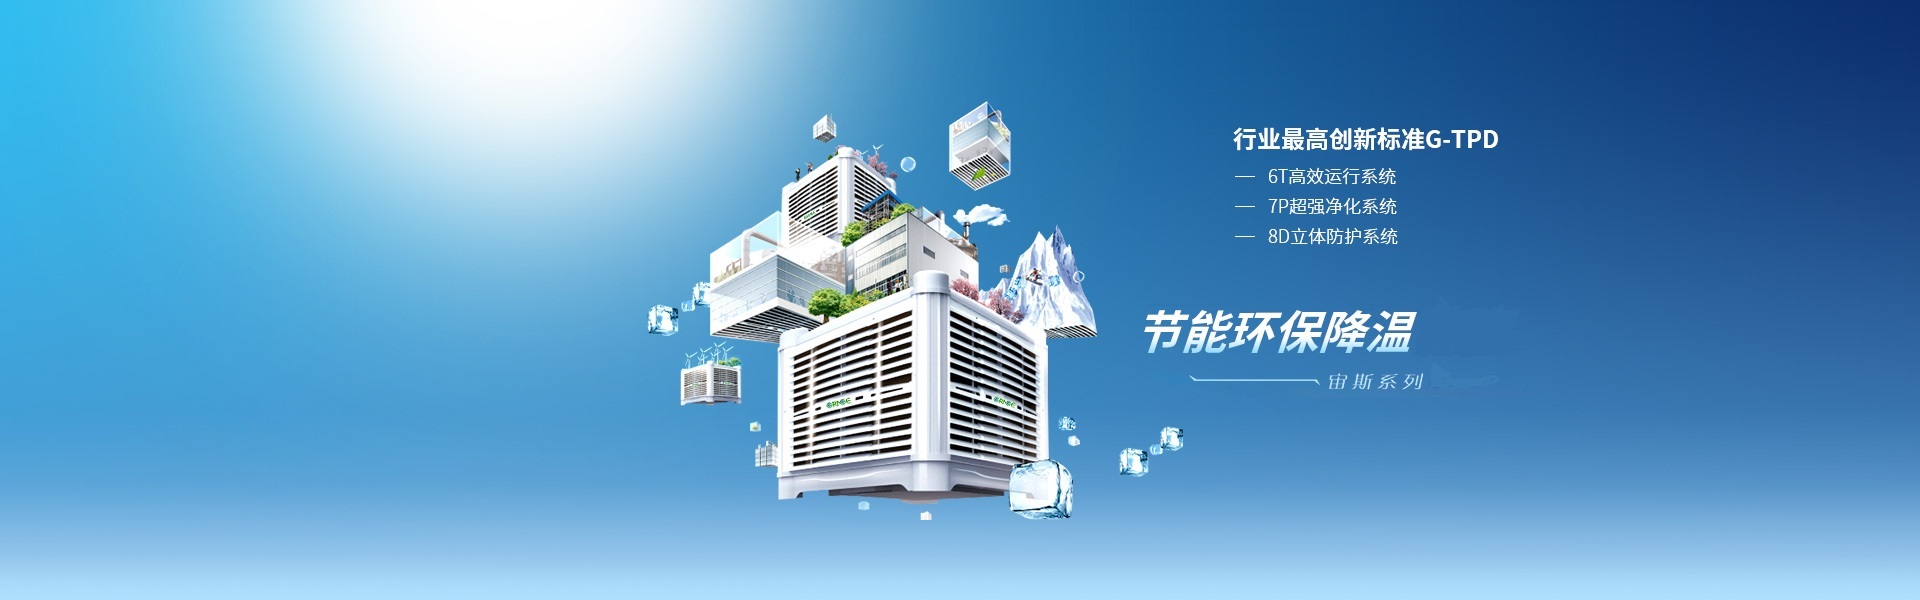 广东绿戈环保科技股份有限公司